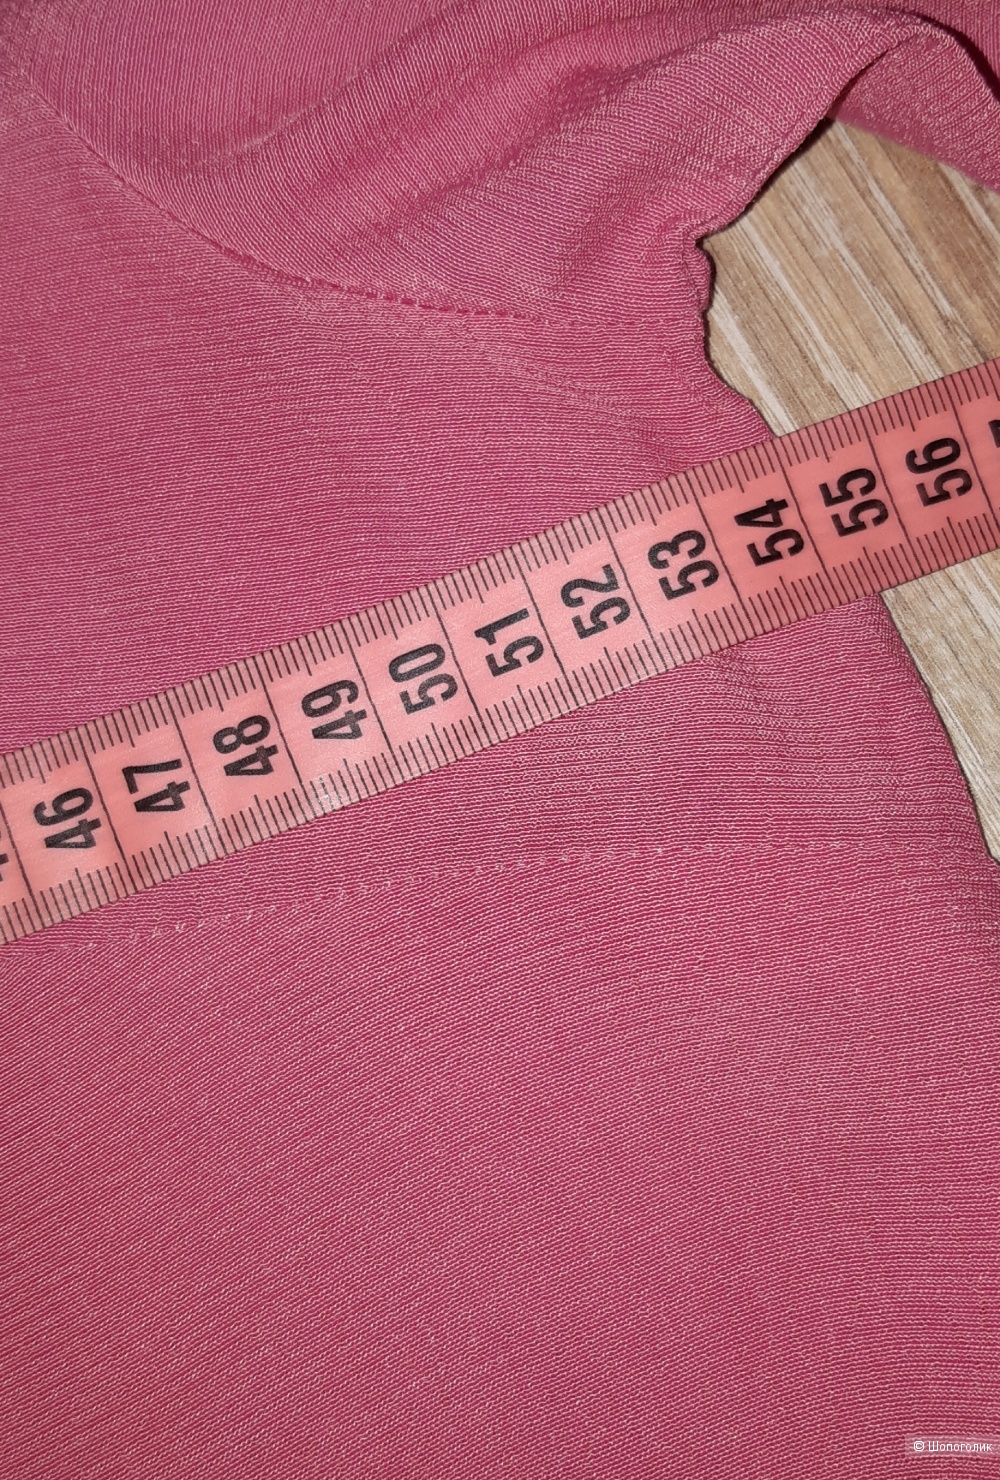 Рубашка trussardi jeans, размер 46/48